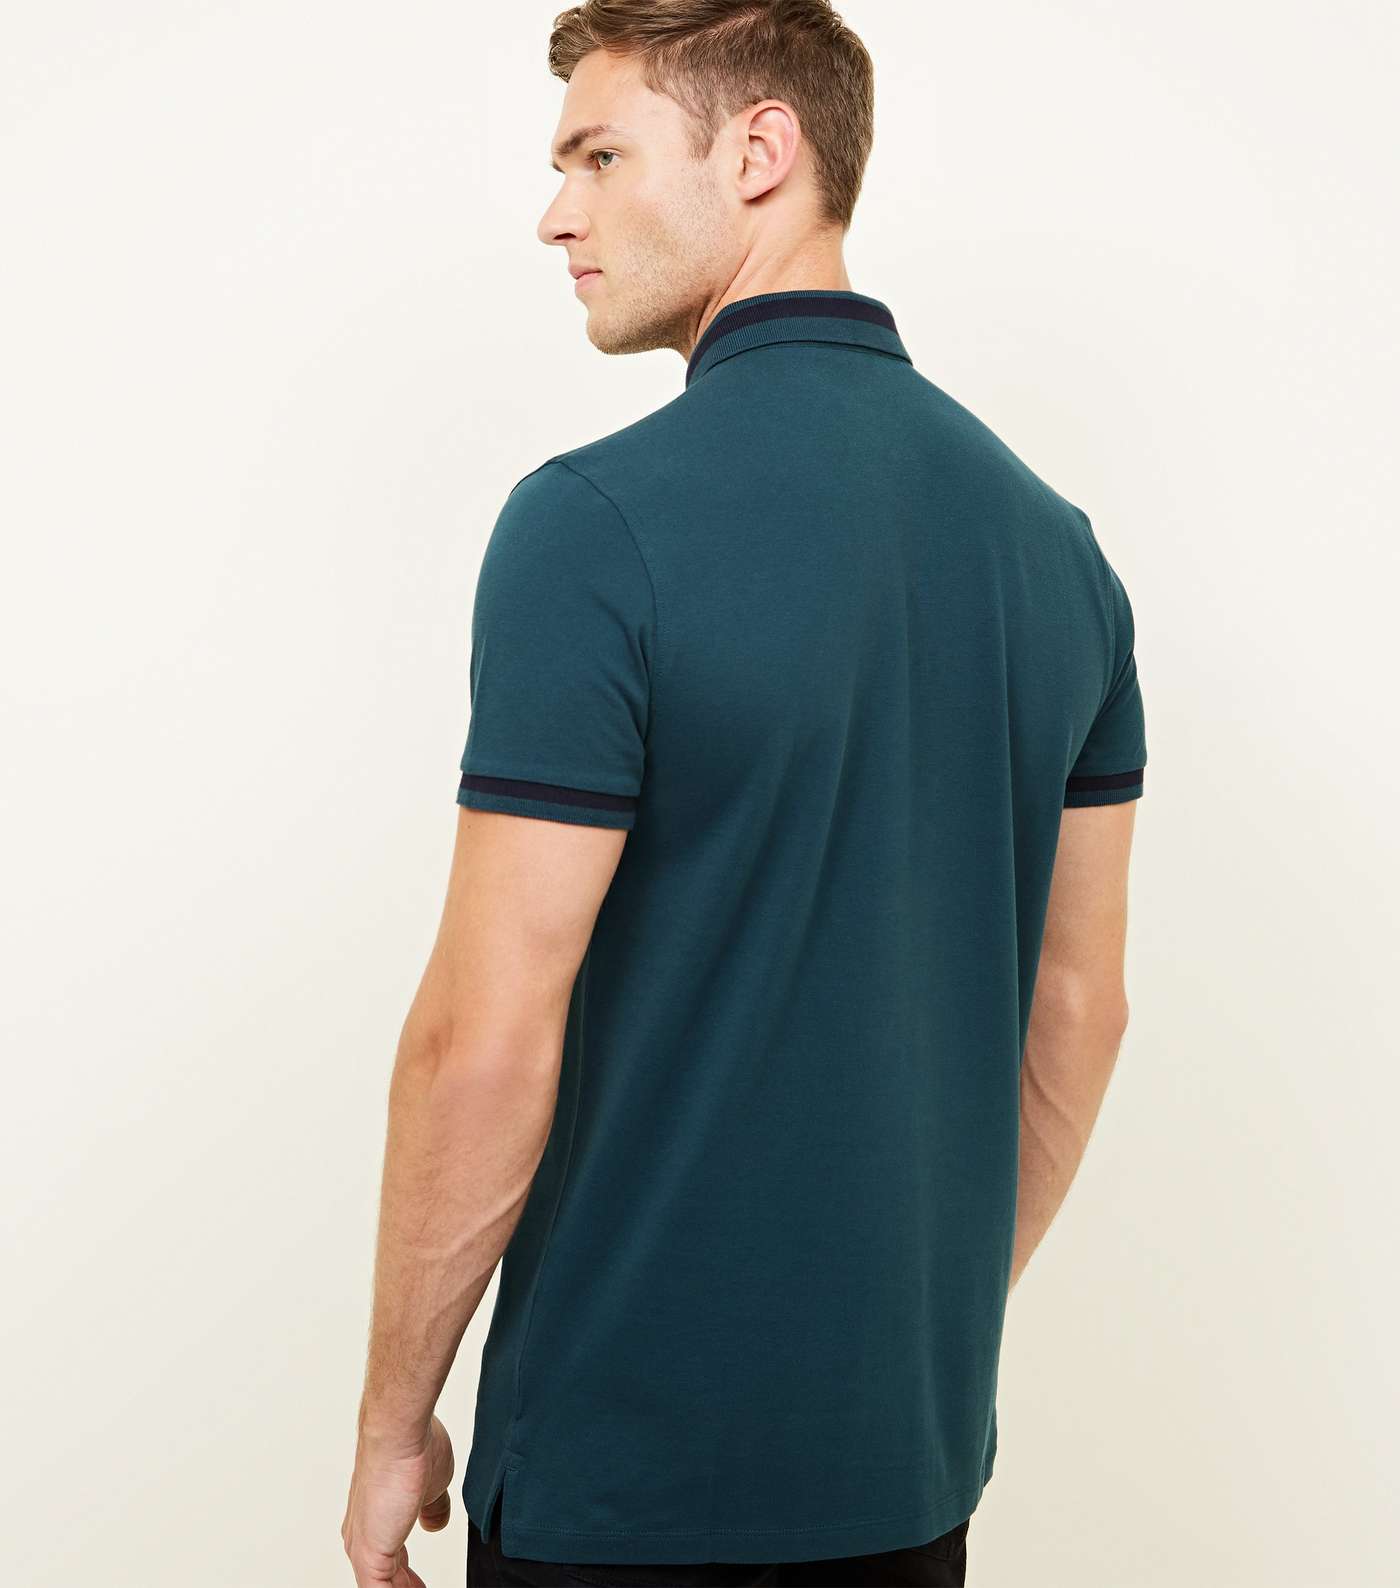 Teal Stripe Collar Polo Shirt Image 3